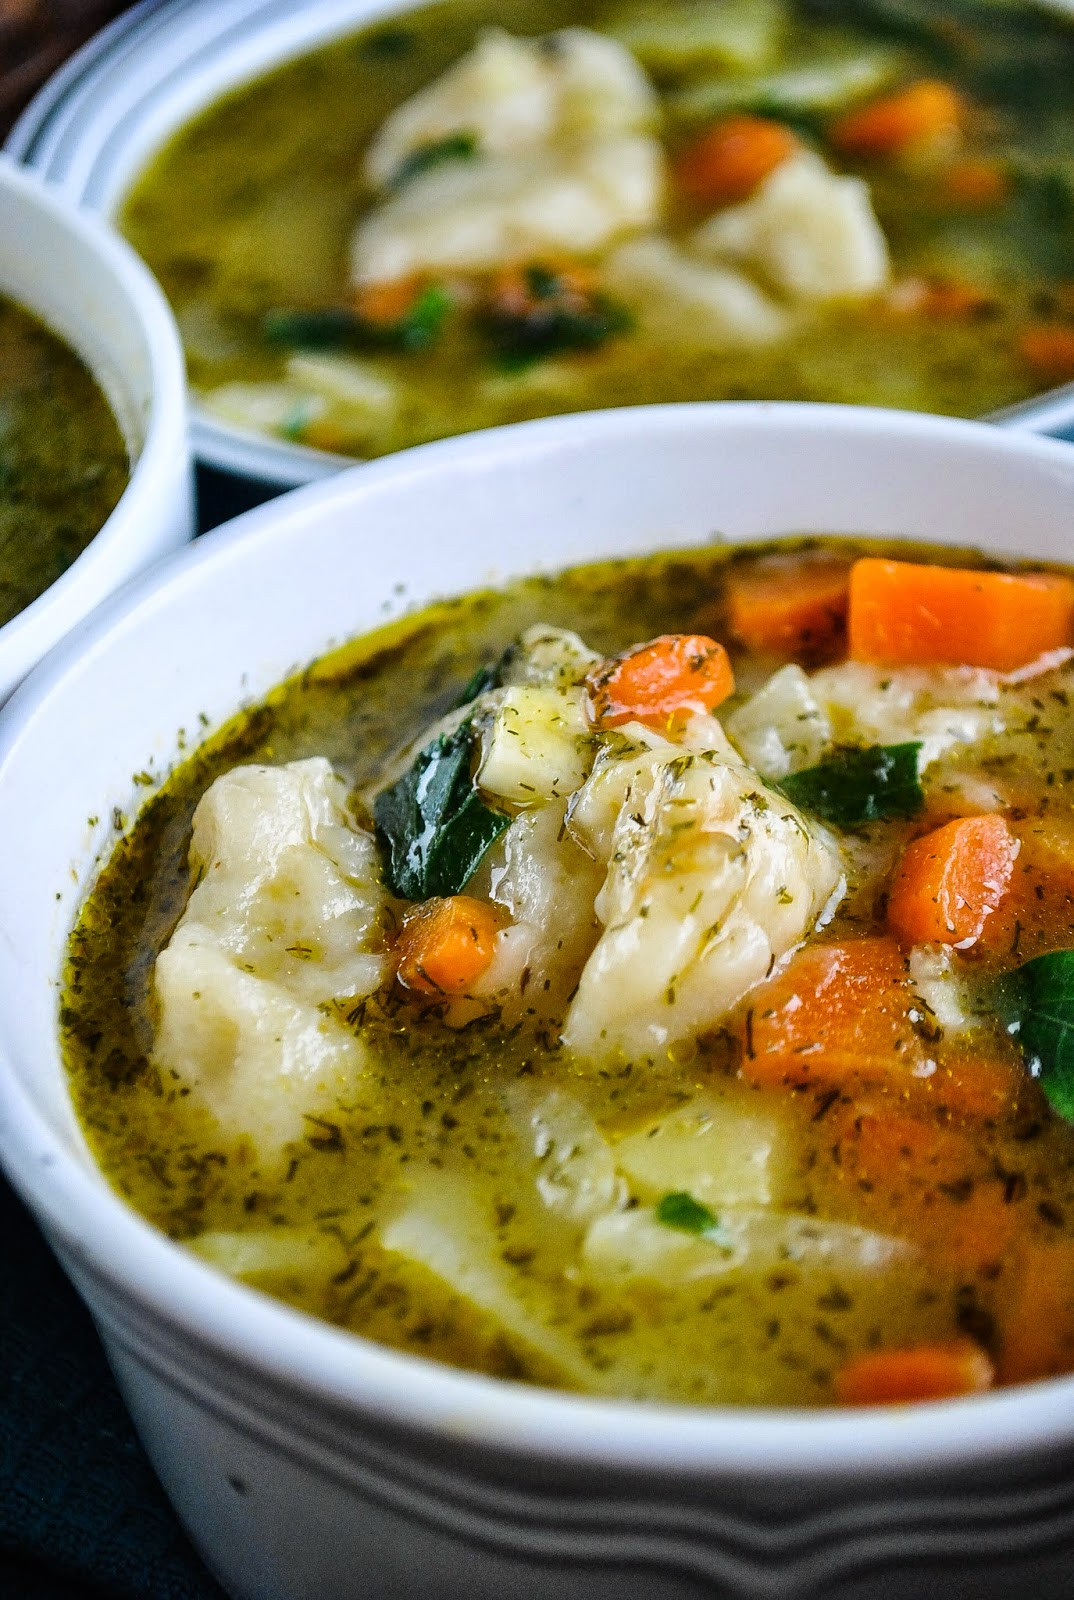 Vegetarian Soup Dumplings
 Easy ve able and dumpling soup video VeganSandra